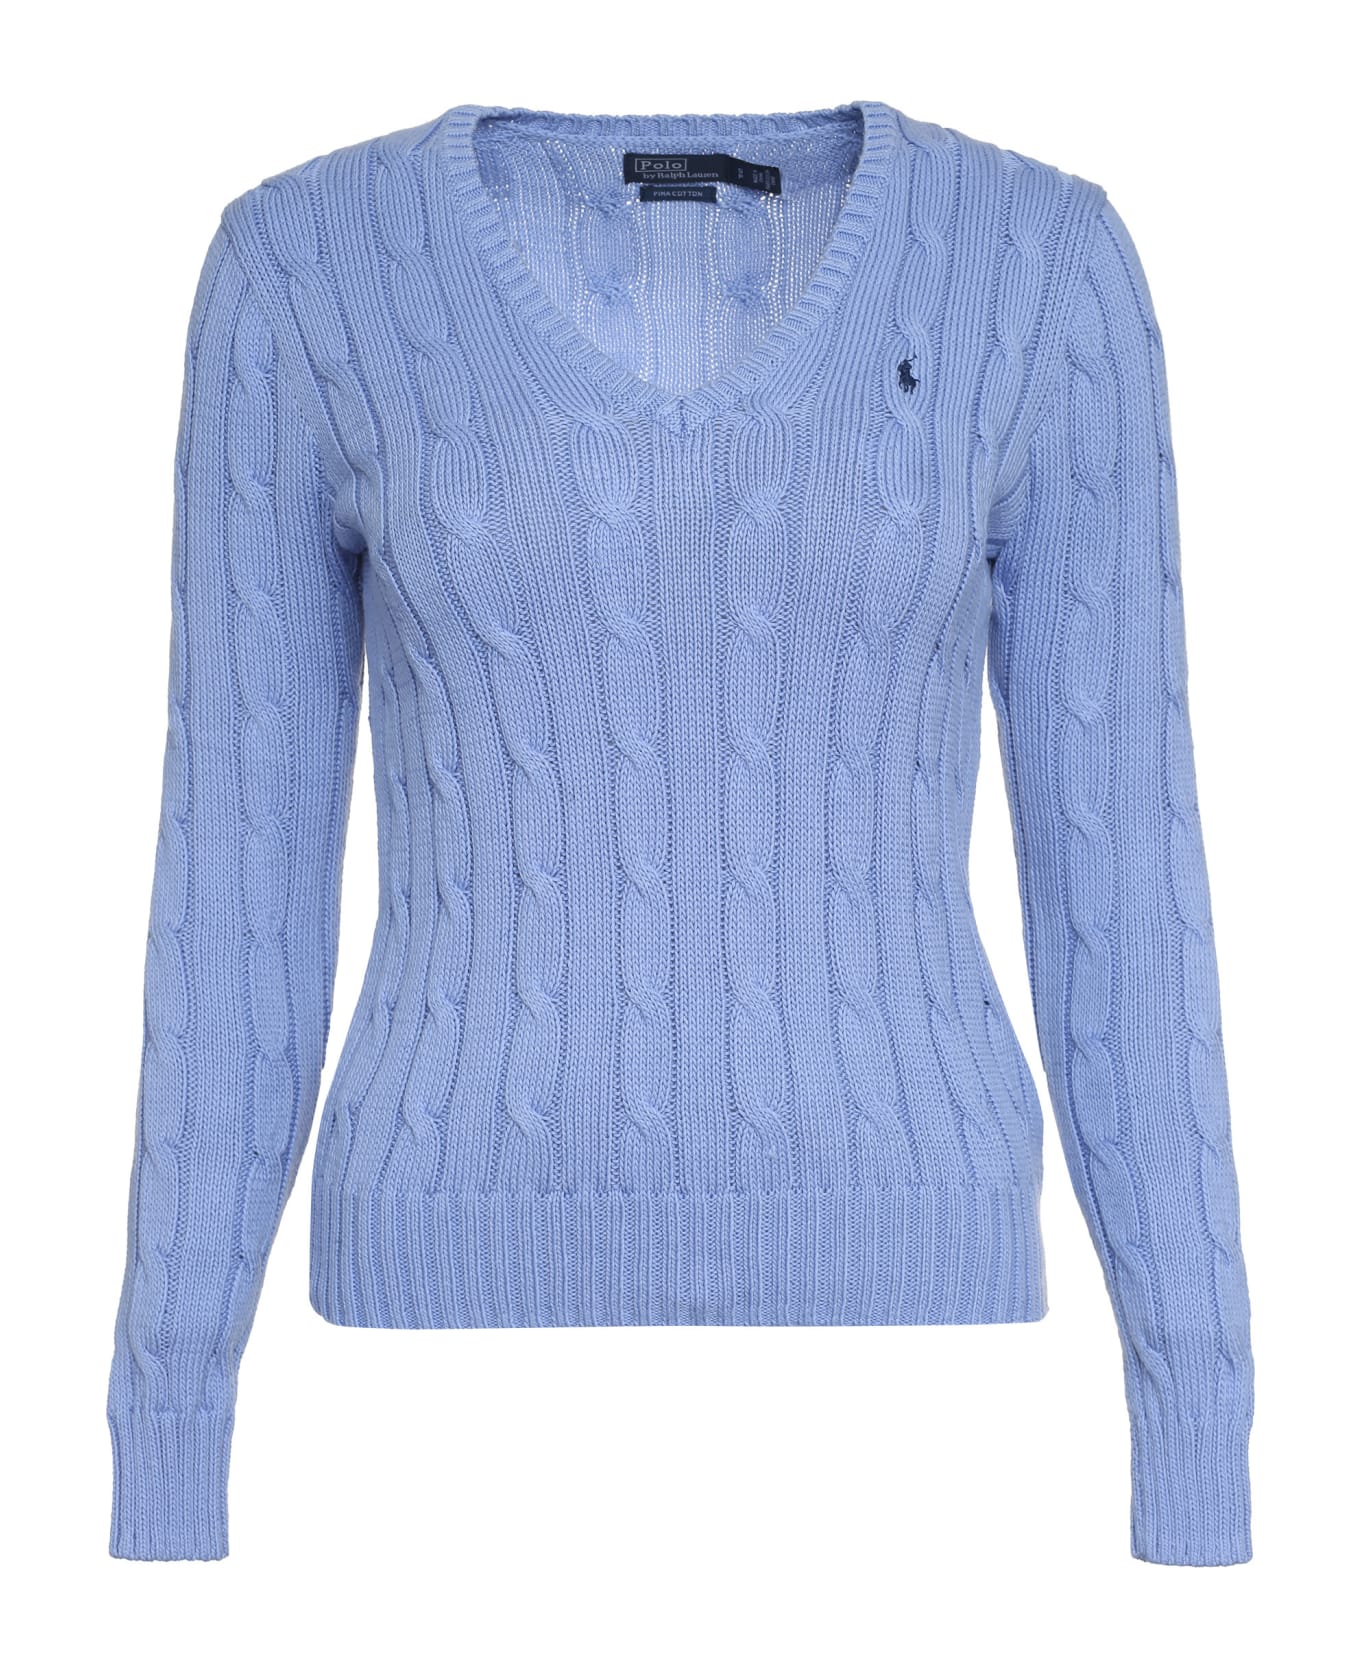 Ralph Lauren Pony Sweater - Blue ニットウェア